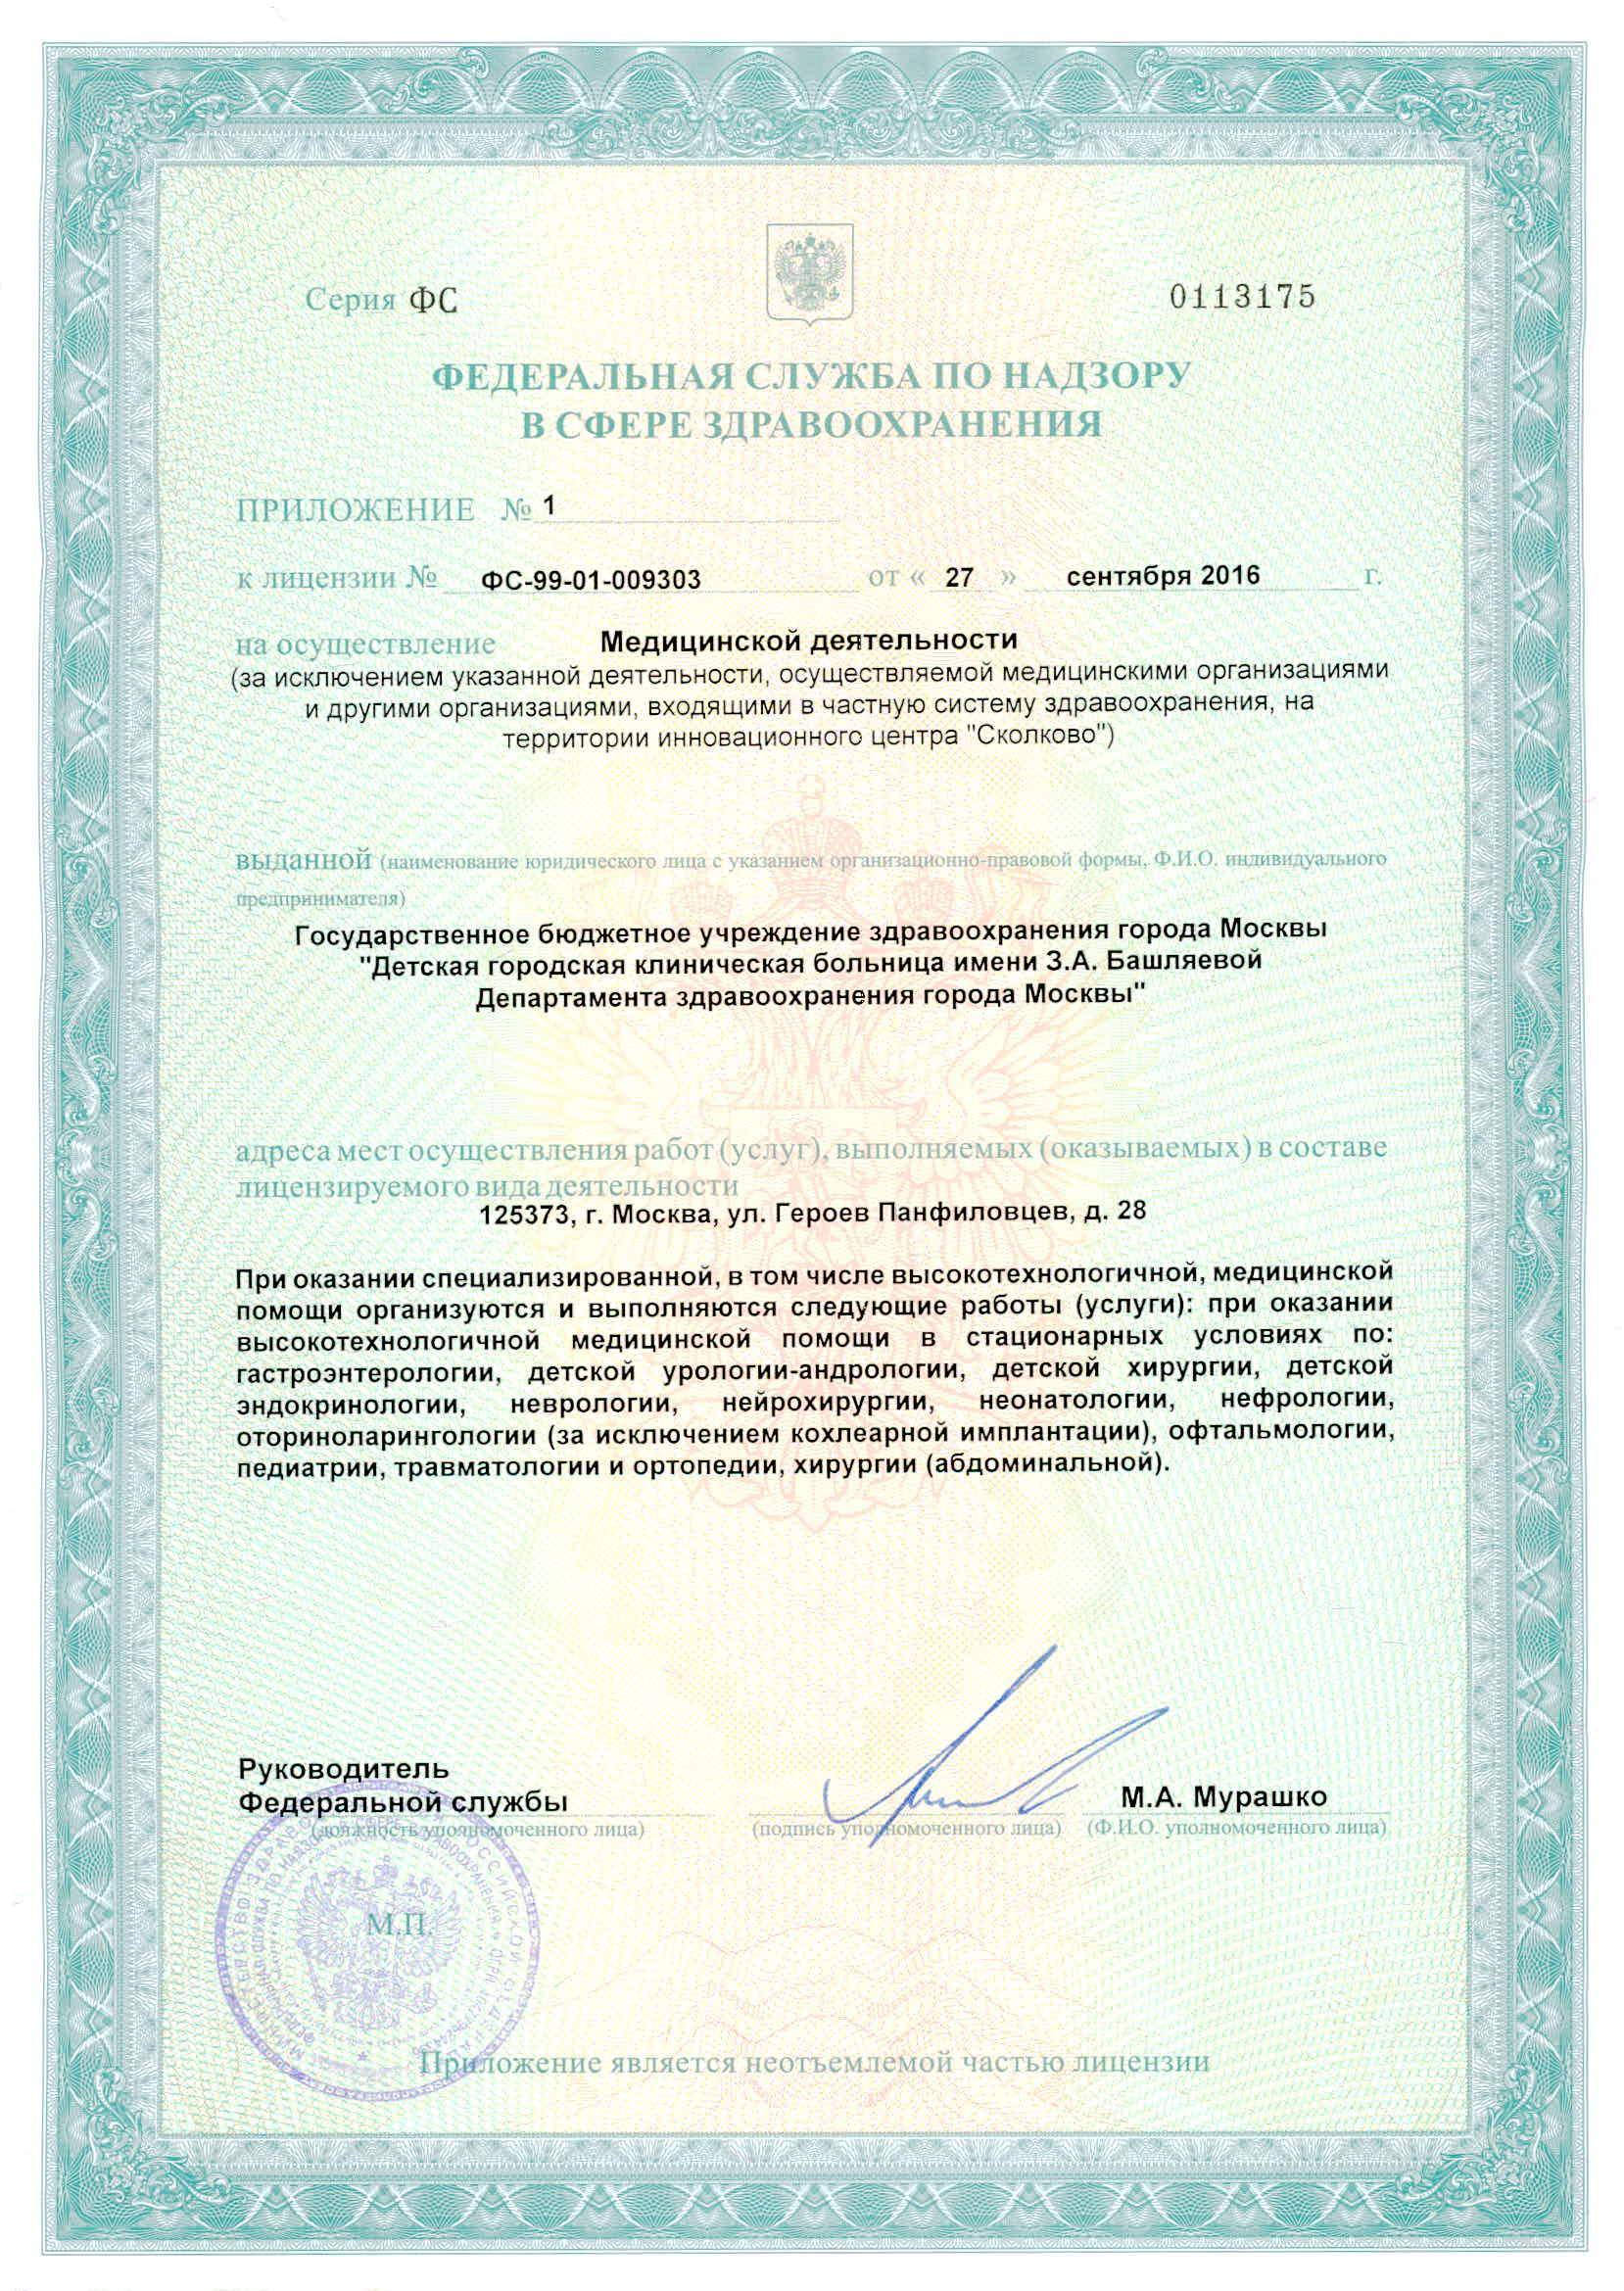 Тушинская детская городская больница лицензия №3